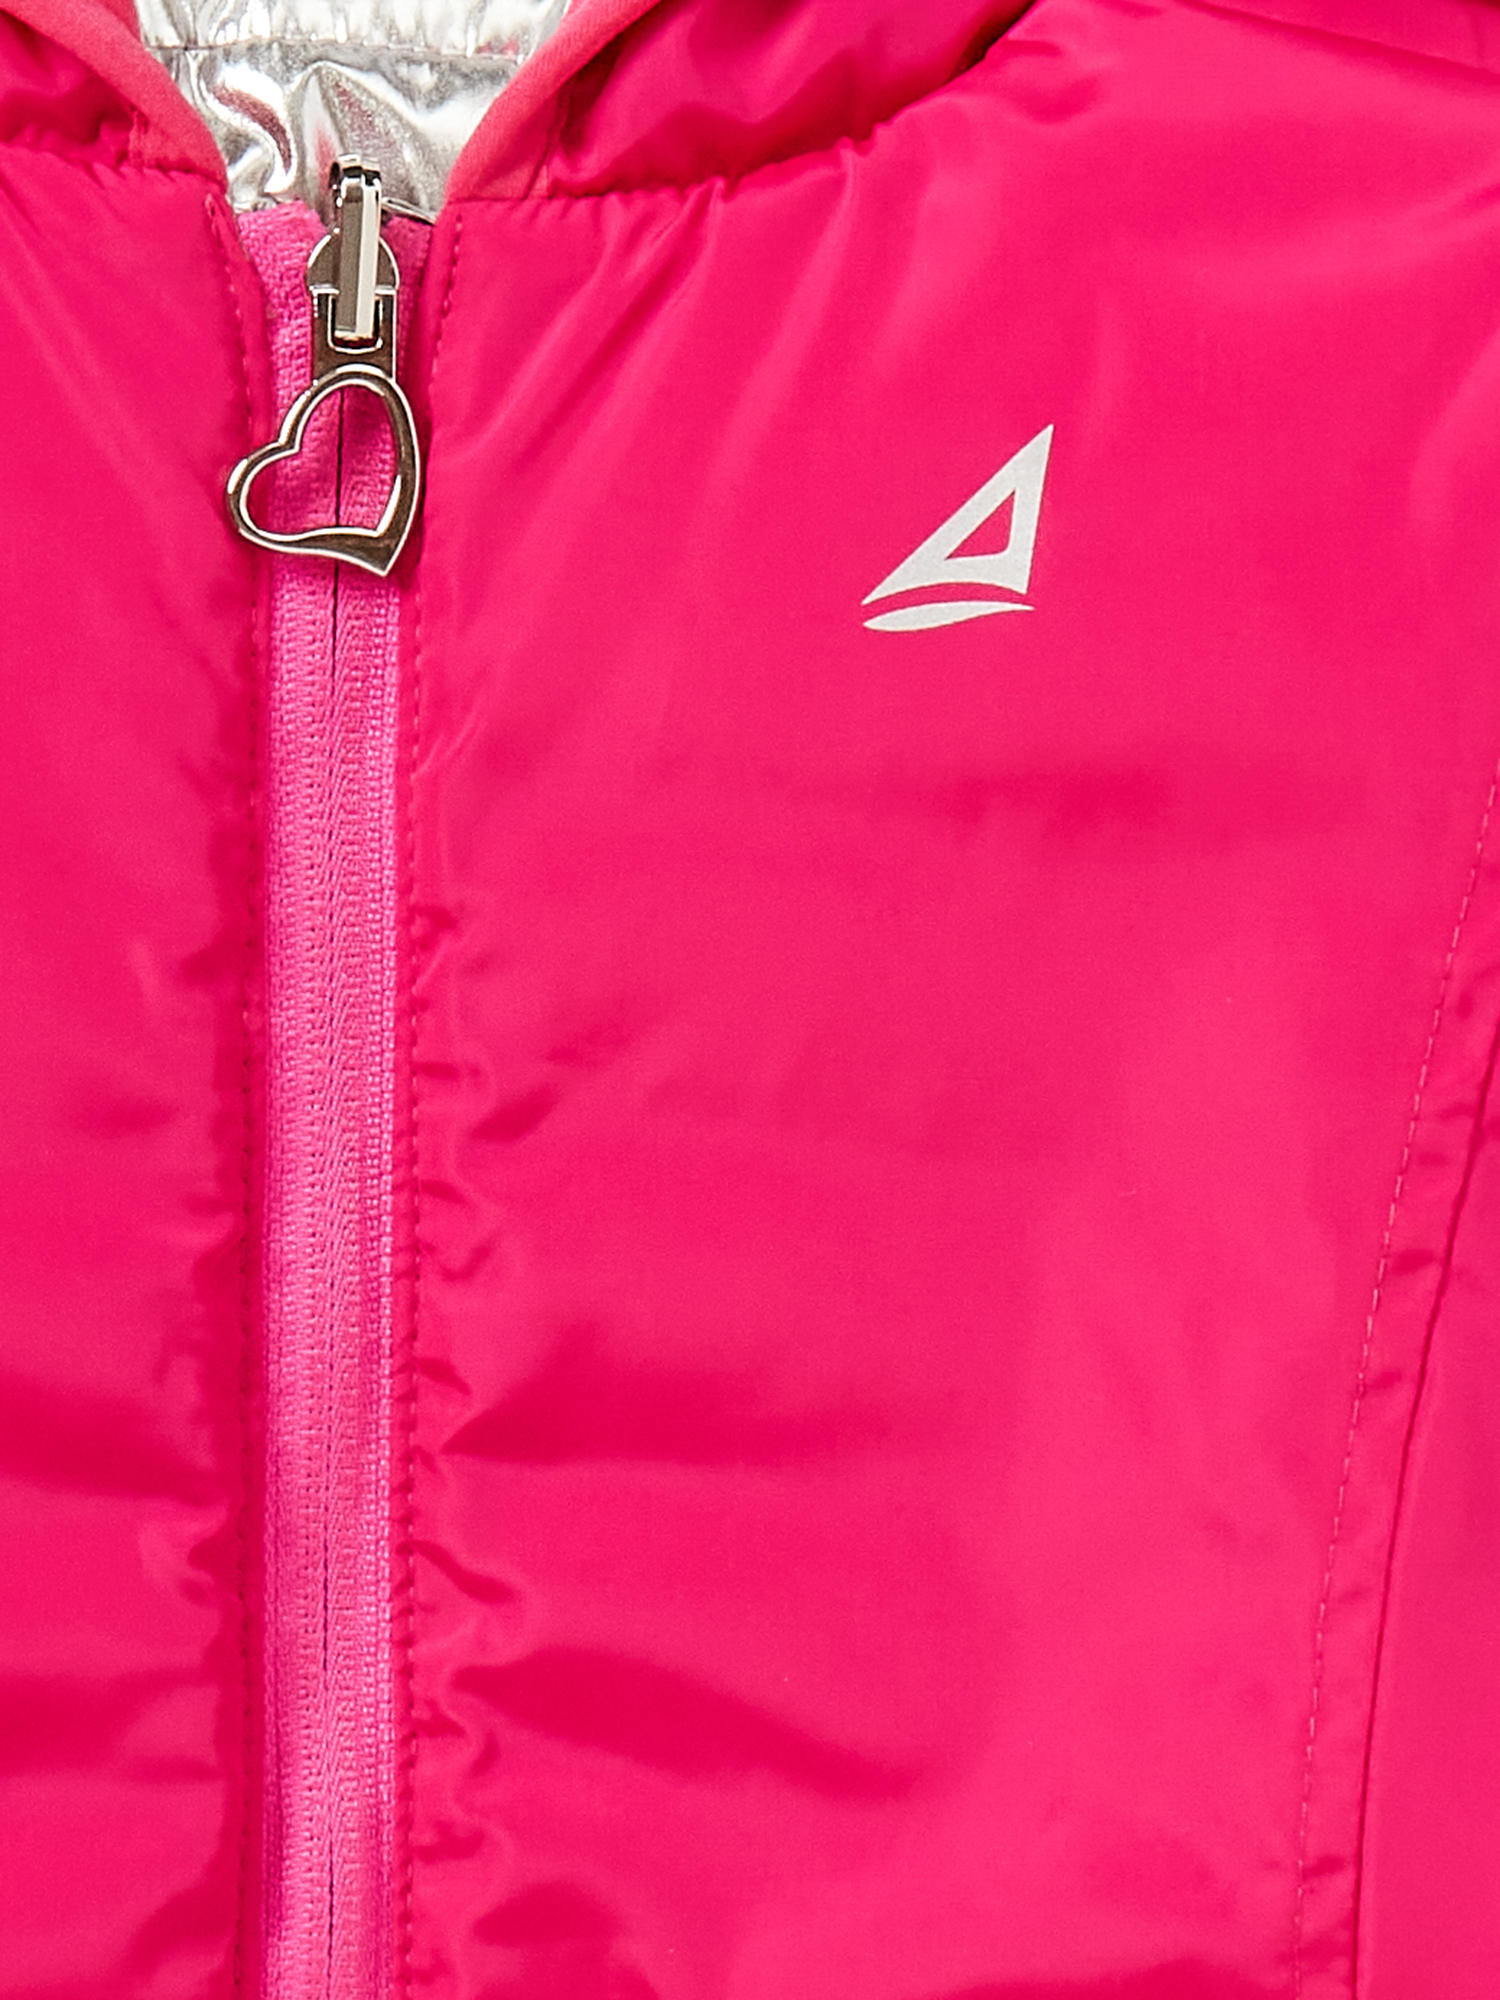 Atlantis Girls Reversible Puffer Jacket, Sizes 4-14 - image 4 of 4